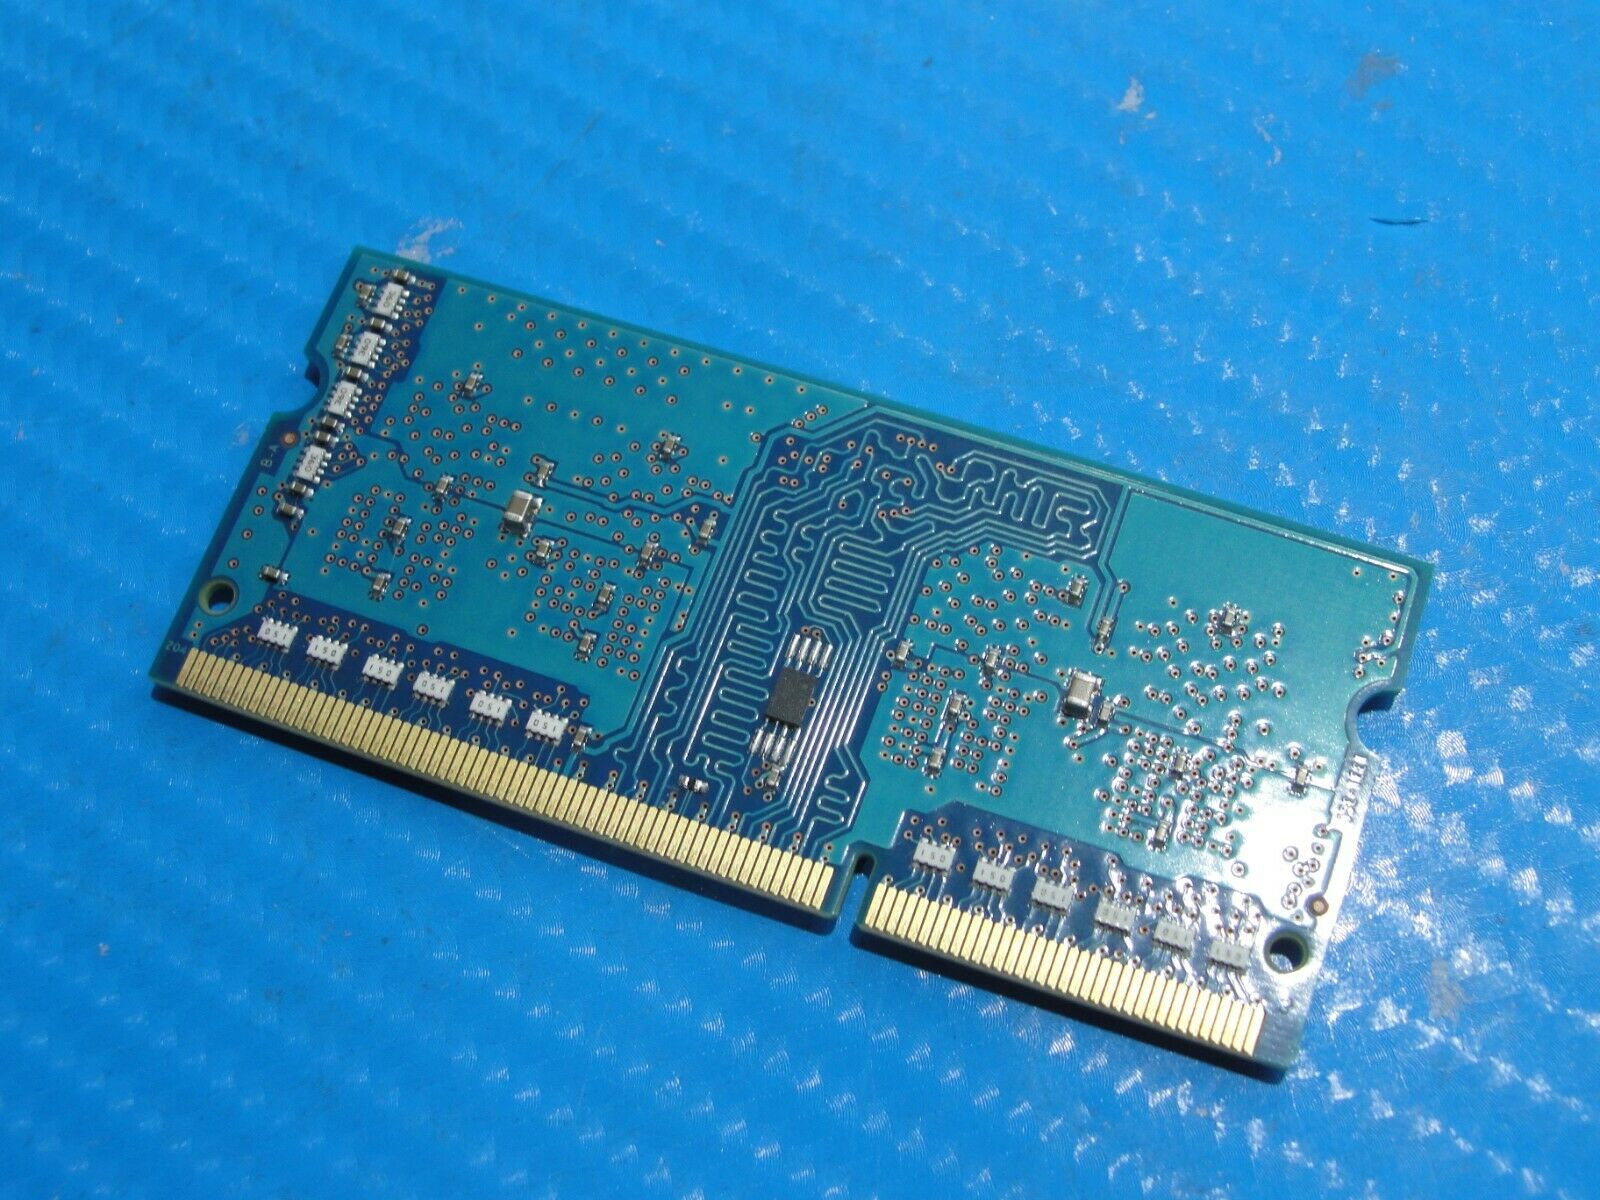 Asus UX302L SK Hynix 2GB 1Rx16 PC3L-12800S SO-DIMM Memory RAM HMT425S6AFR6A-PB SK Hynix